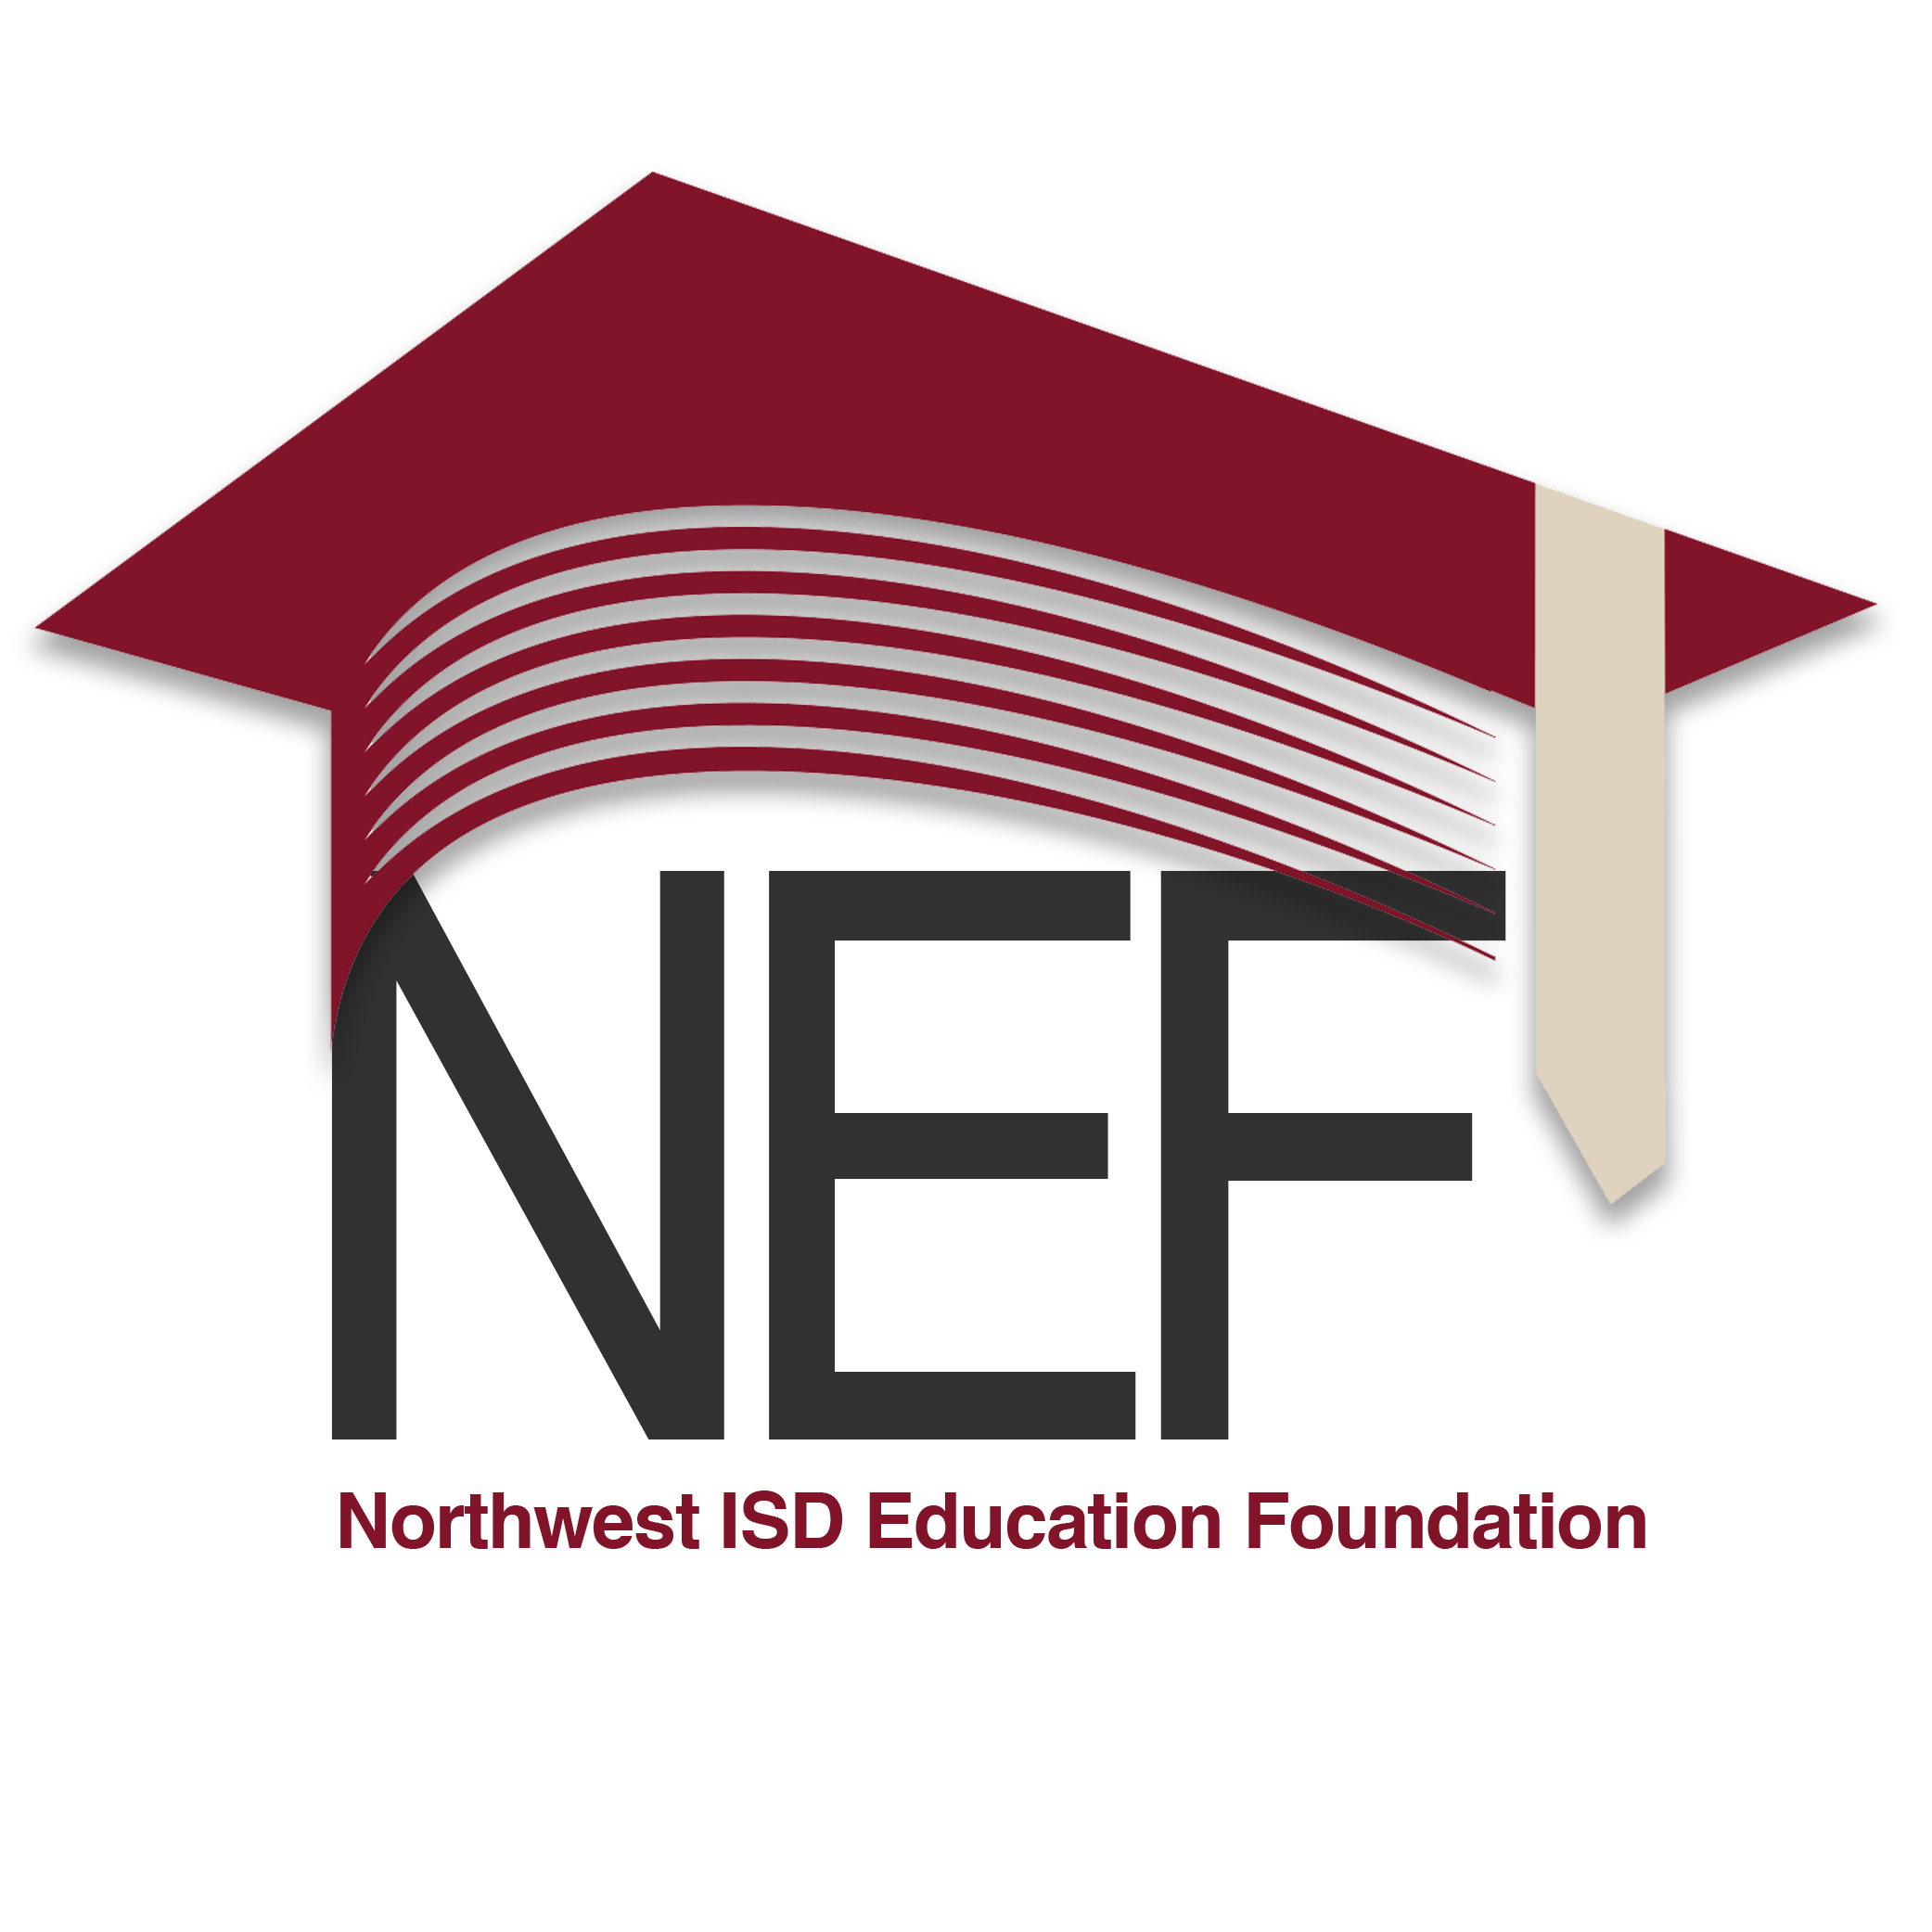 Northwest ISD Education Foundation Logo